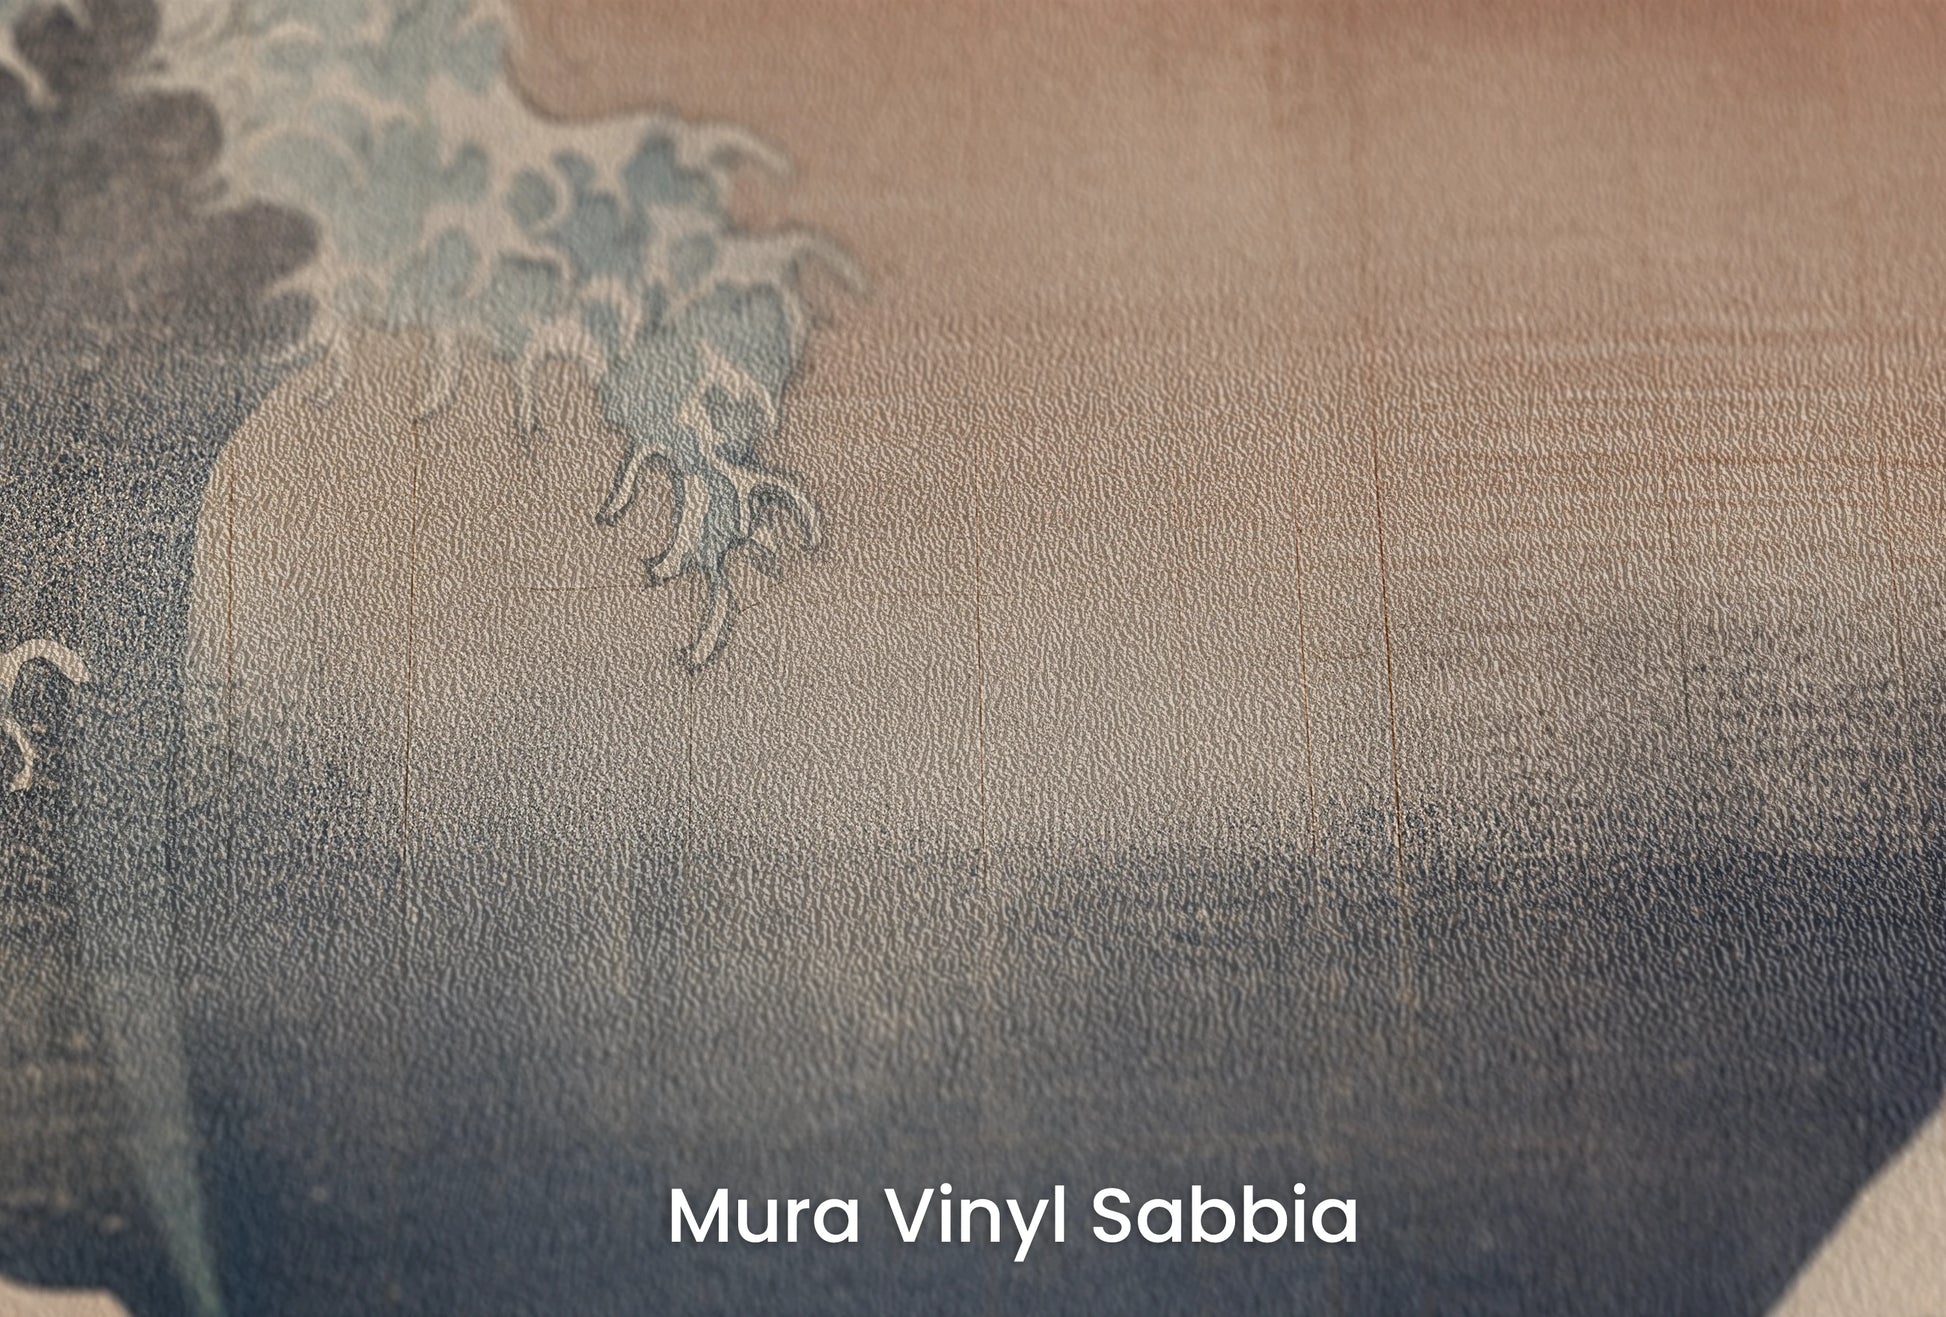 Zbliżenie na artystyczną fototapetę o nazwie Red Sun Tsunami na podłożu Mura Vinyl Sabbia struktura grubego ziarna piasku.